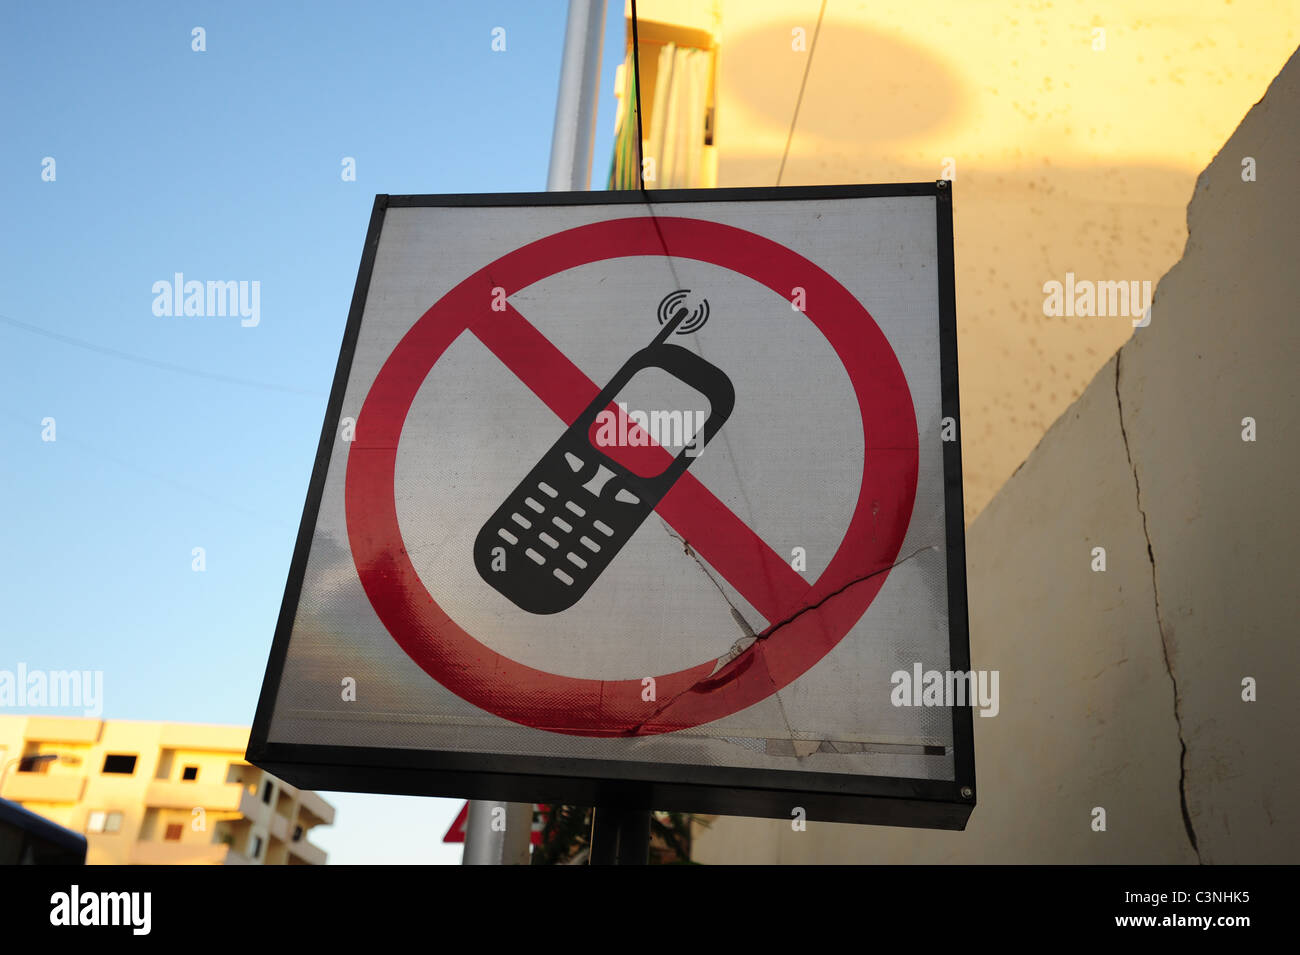 Verbotene Zelle Handy-Nutzung Zeichen Ägypten Nahost Stockfotografie - Alamy